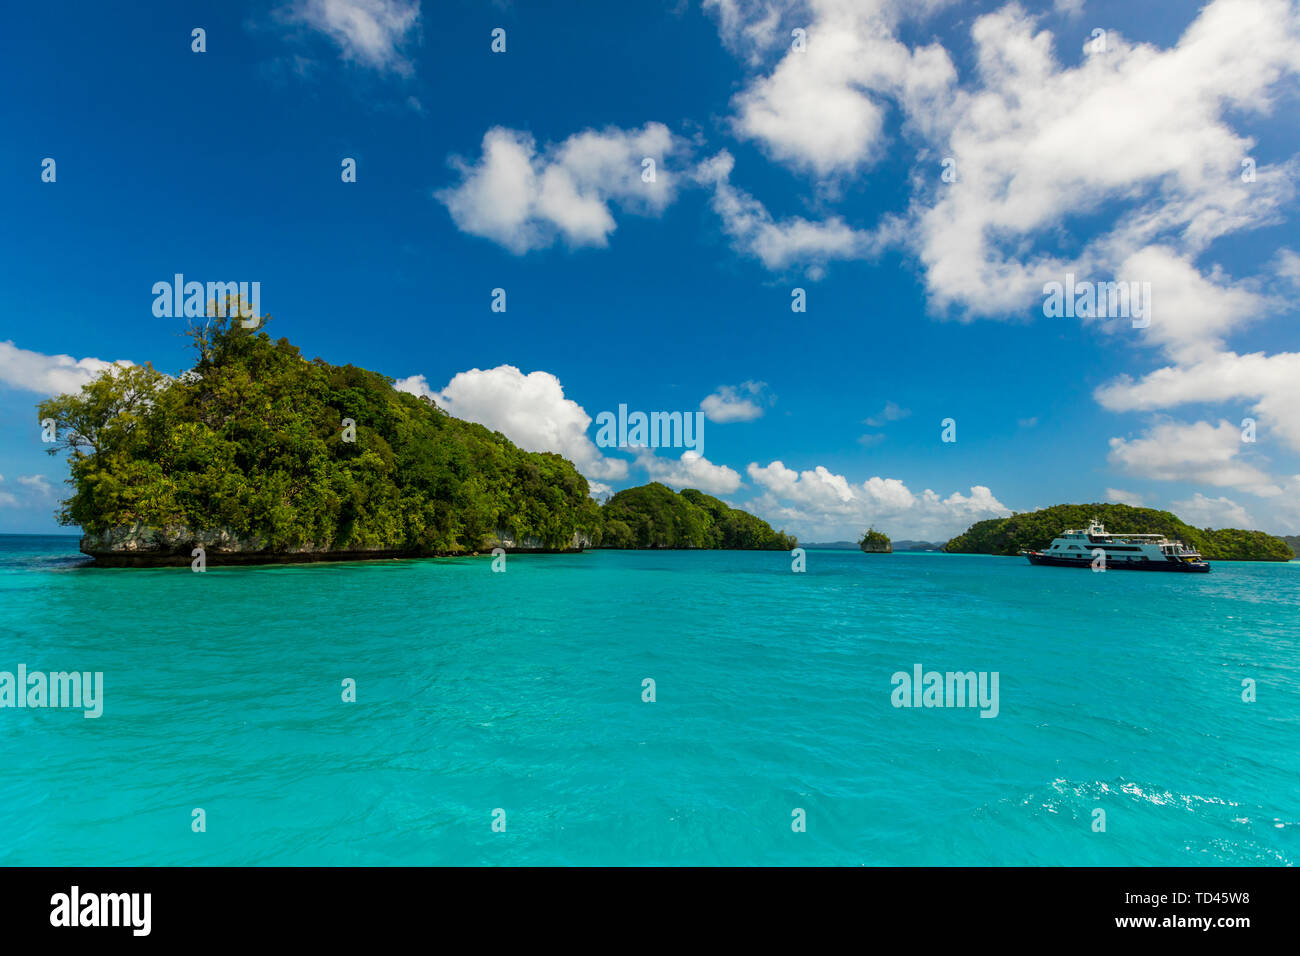 Vista de la roca de Koror islas, la isla de Koror, Palau, Micronesia, Pacific Foto de stock